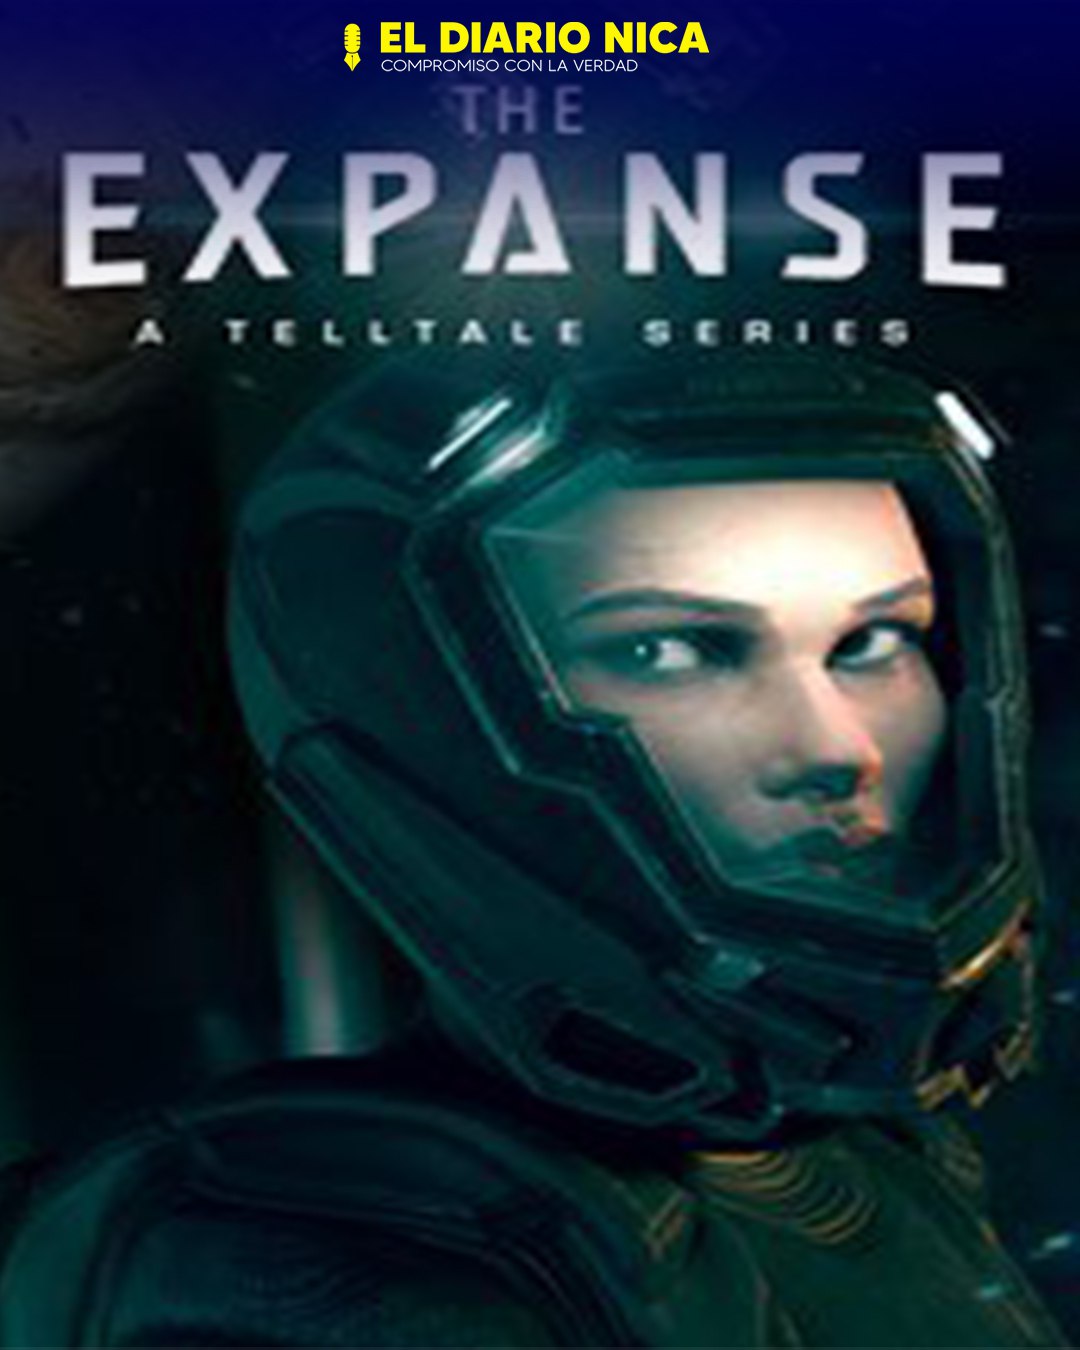 The Expanse ya tiene fecha de lanzamiento